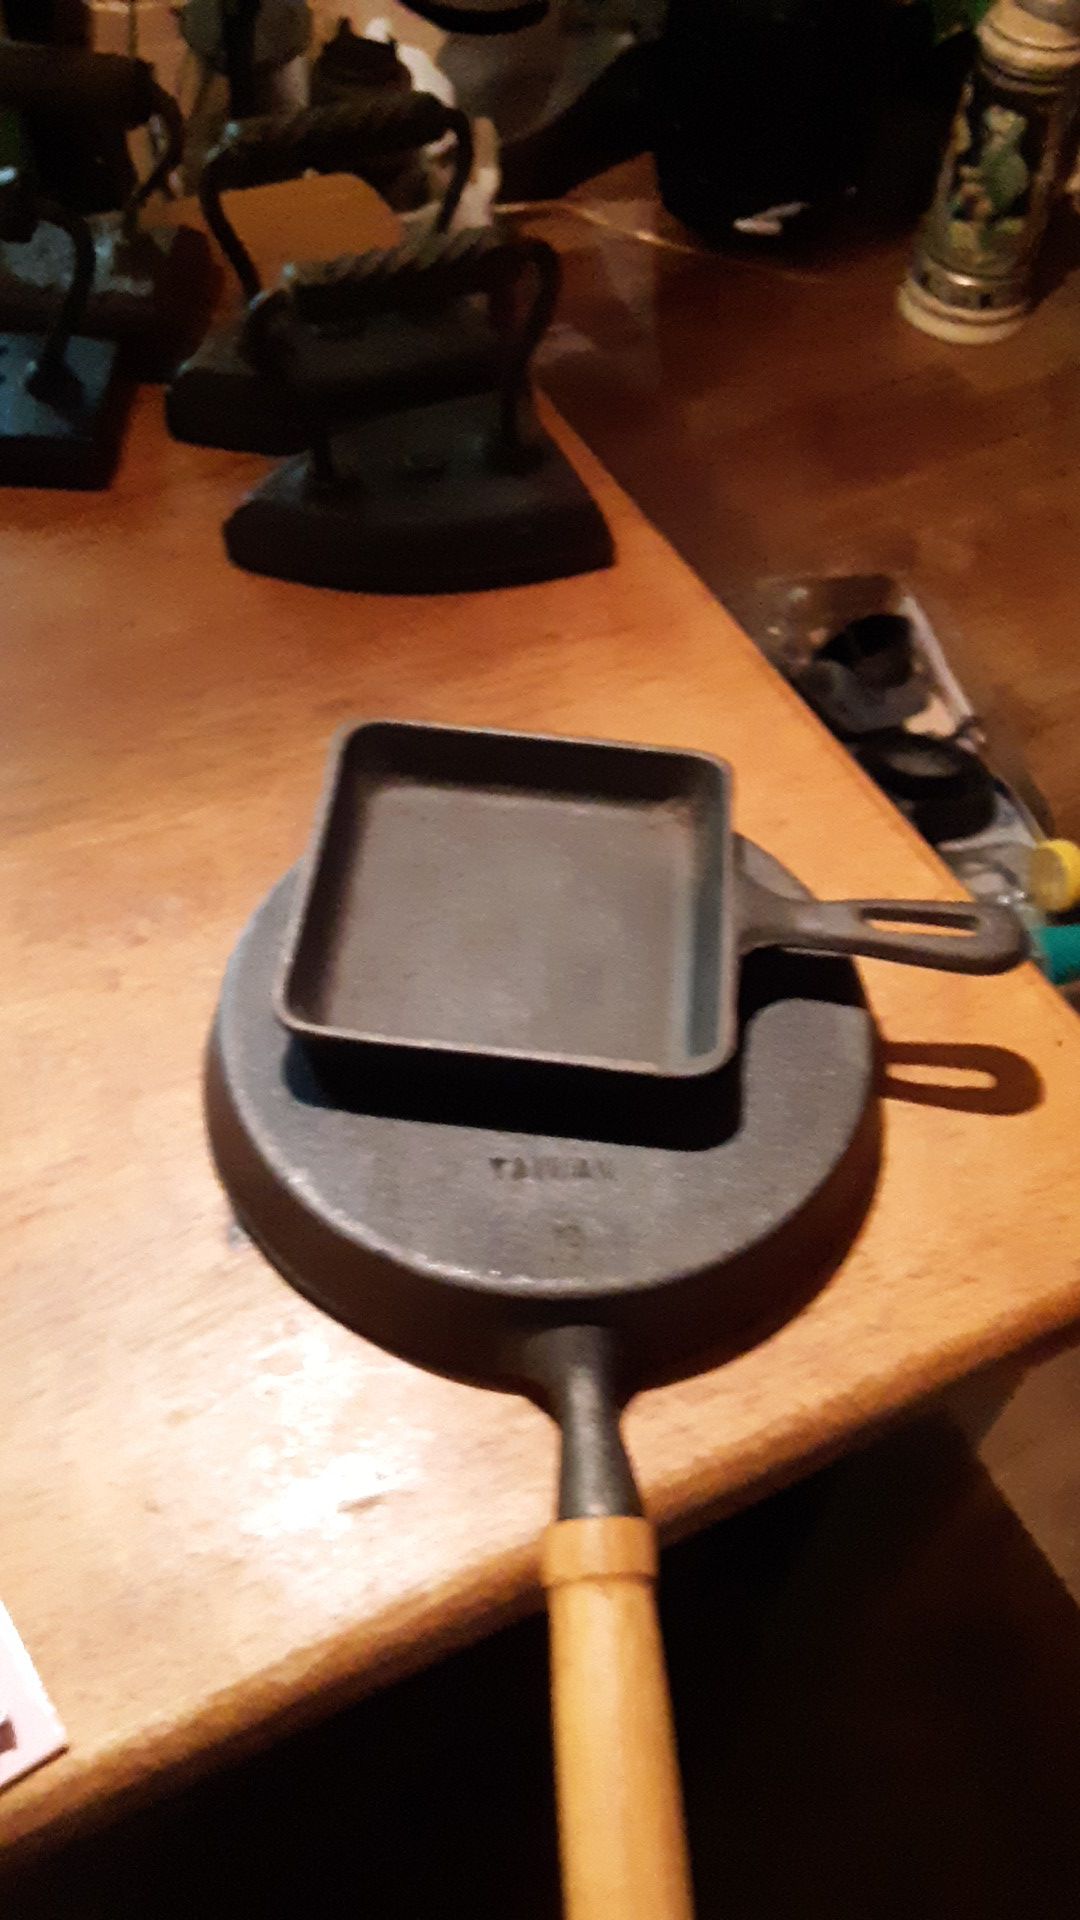 2 Taiwan cast iron frying pan